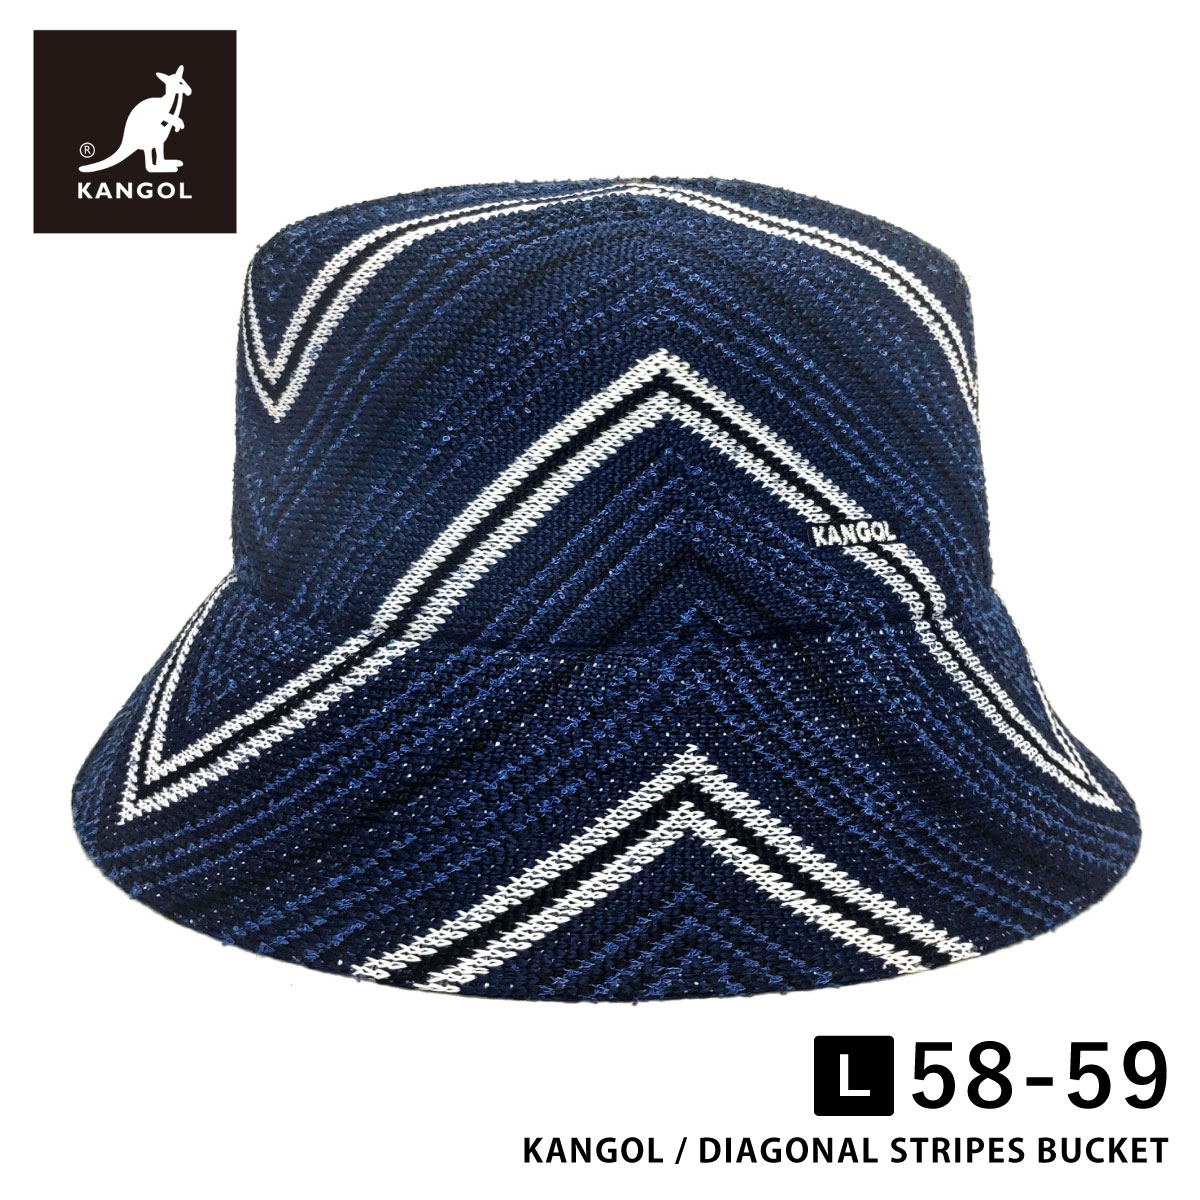 KANGOL 帽子 レトロ バケットハット 父の日 帽子 ストライプ柄 サイズが選べる 56cm-5...